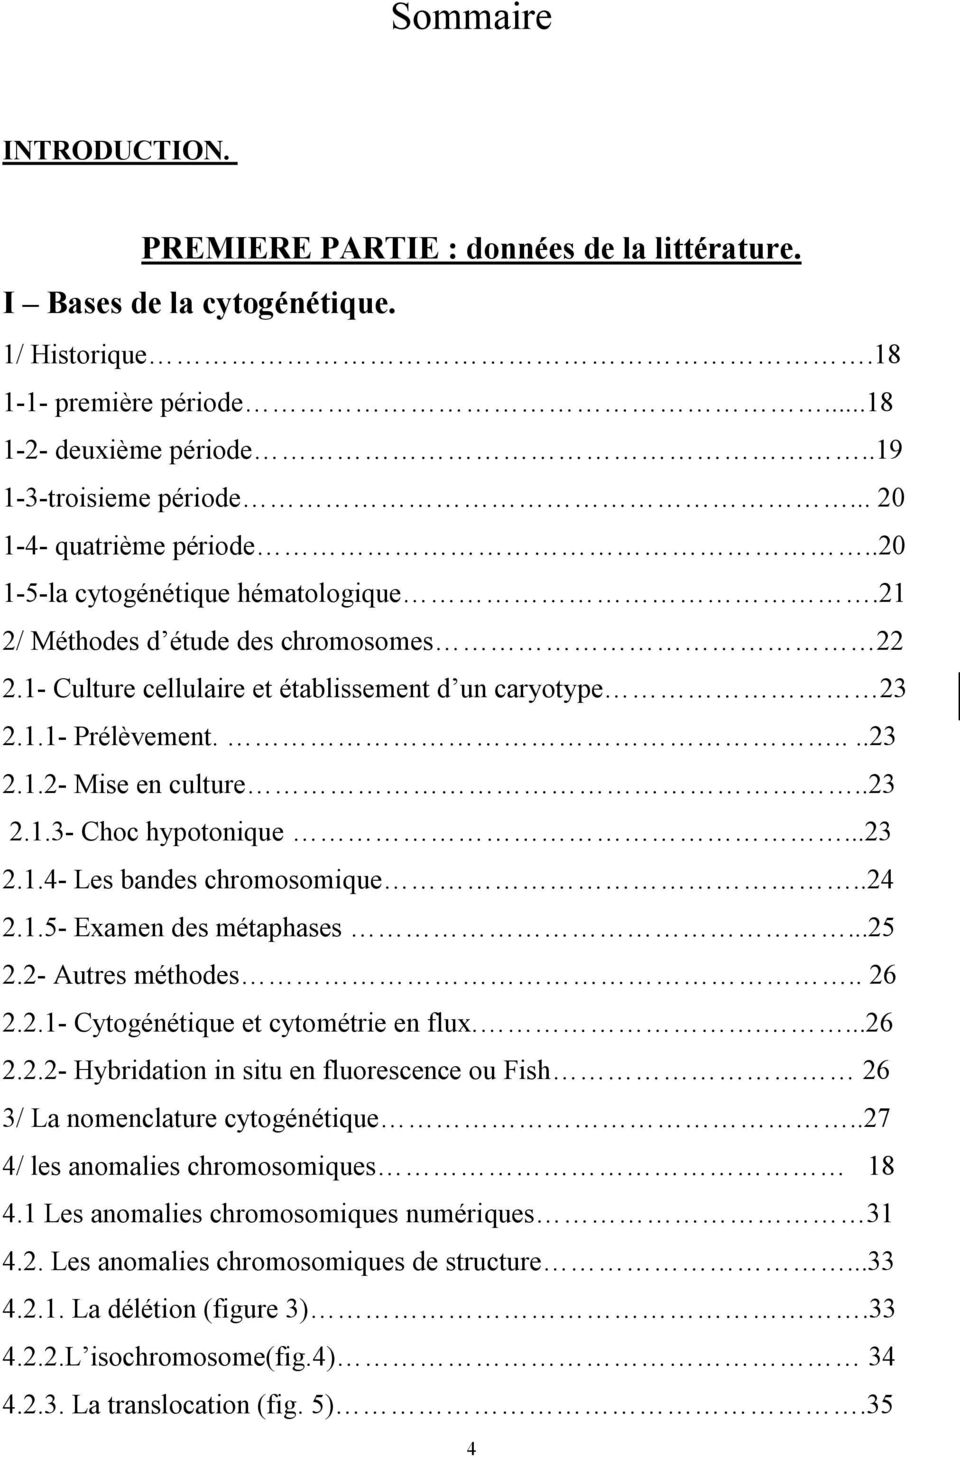 .23 2.1.3- Choc hypotonique...23 2.1.4- Les bandes chromosomique..24 2.1.5- Examen des métaphases...25 2.2- Autres méthodes.. 26 2.2.1- Cytogénétique et cytométrie en flux.....26 2.2.2- Hybridation in situ en fluorescence ou Fish 26 3/ La nomenclature cytogénétique.